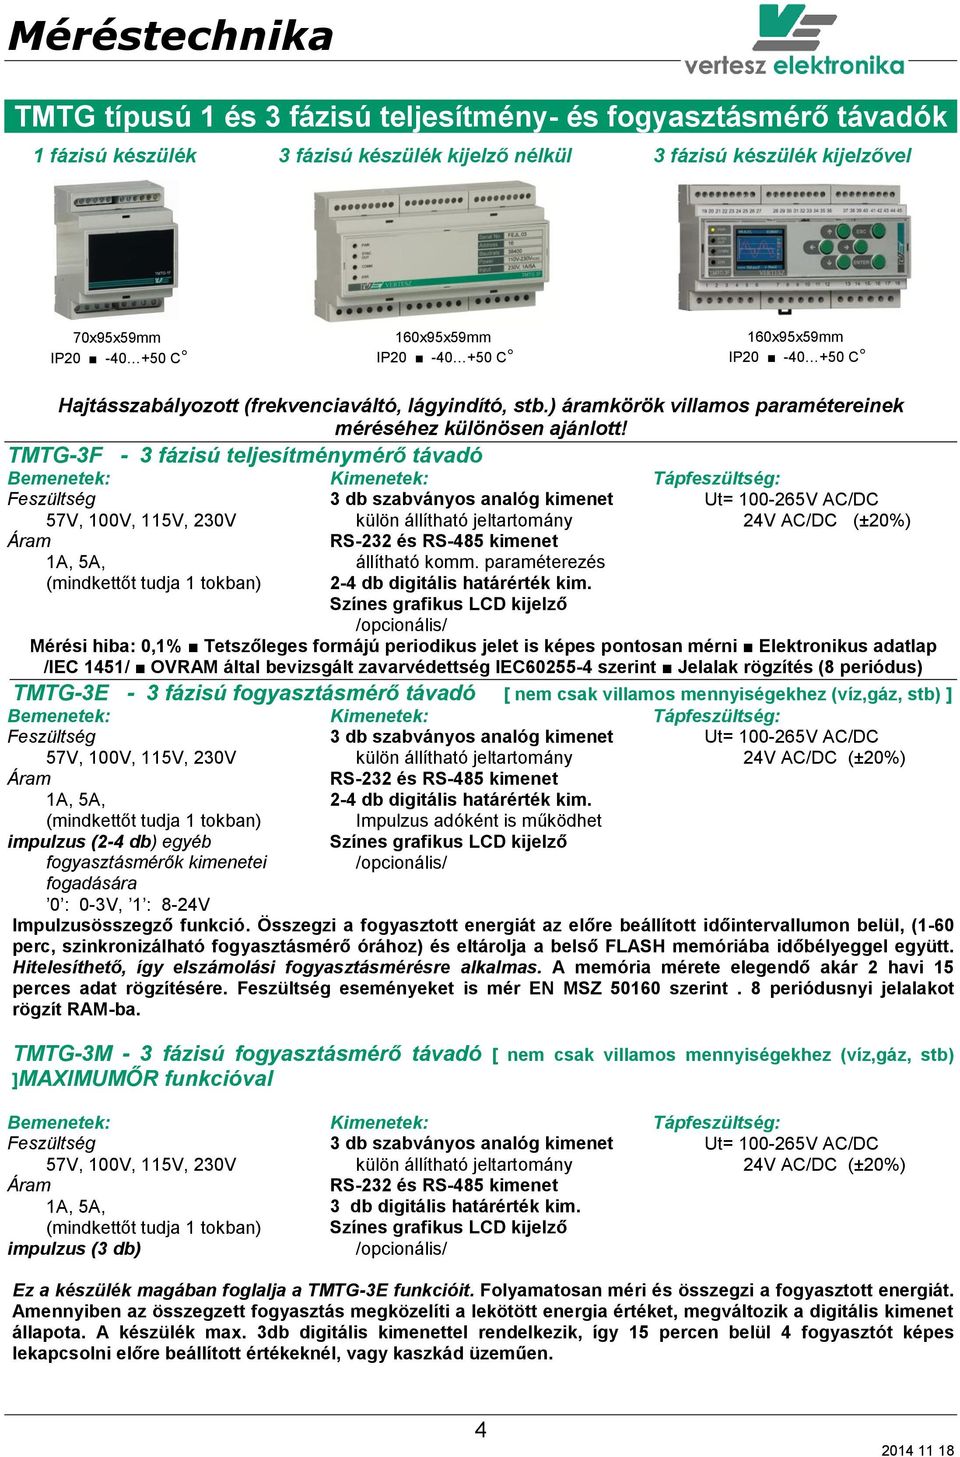 TMTG-3F - 3 fázisú teljesítménymérő távadó Feszültség 57V, 100V, 115V, 230V Áram 1A, 5A, (mindkettőt tudja 1 tokban) 3 db szabványos analóg kimenet külön állítható jeltartomány RS-232 és RS-485